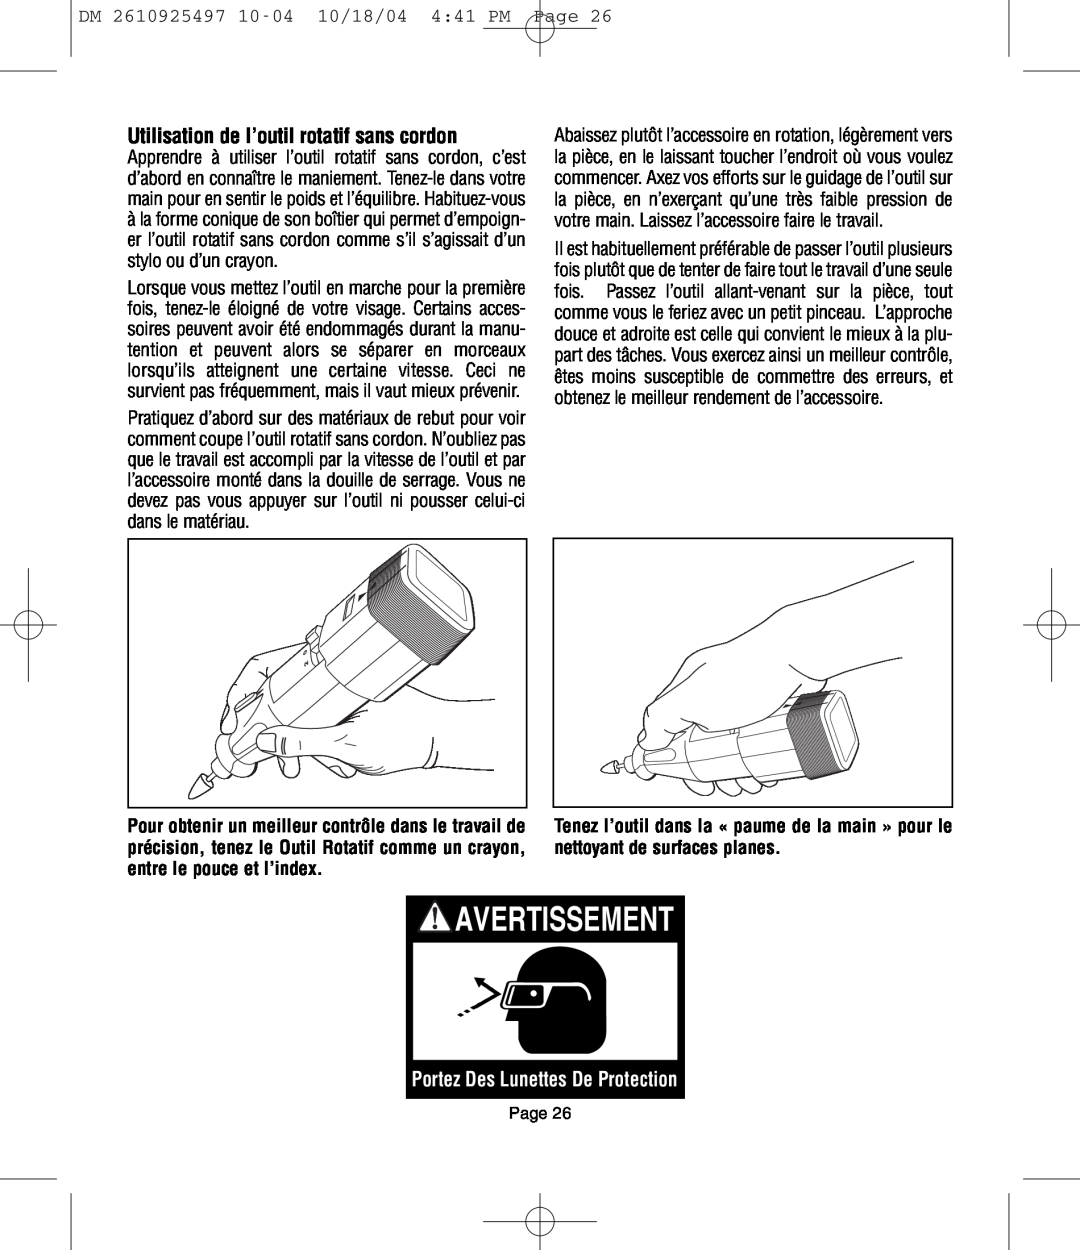 Dremel 764 owner manual Utilisation de l’outil rotatif sans cordon, Portez Des Lunettes De Protection, Avertissement 